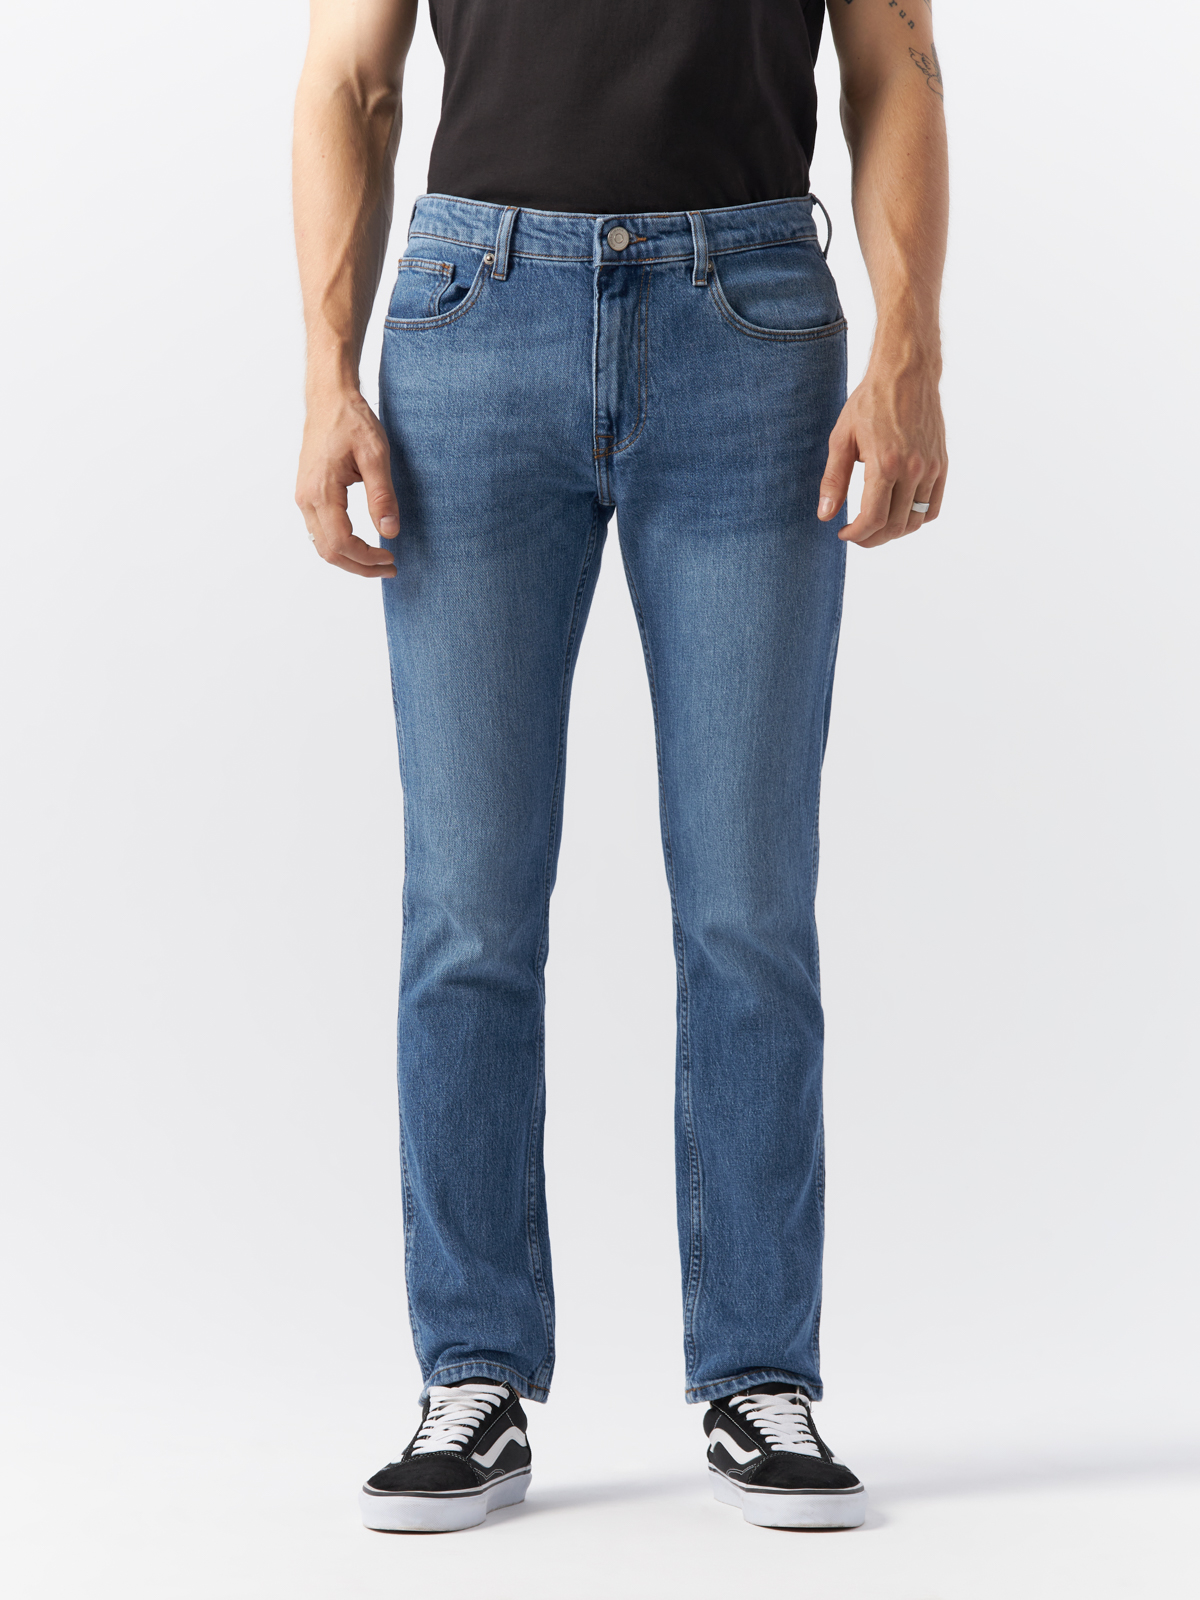 Джинсы Cross Jeans для мужчин, C 132-070, размер 31-32, синие